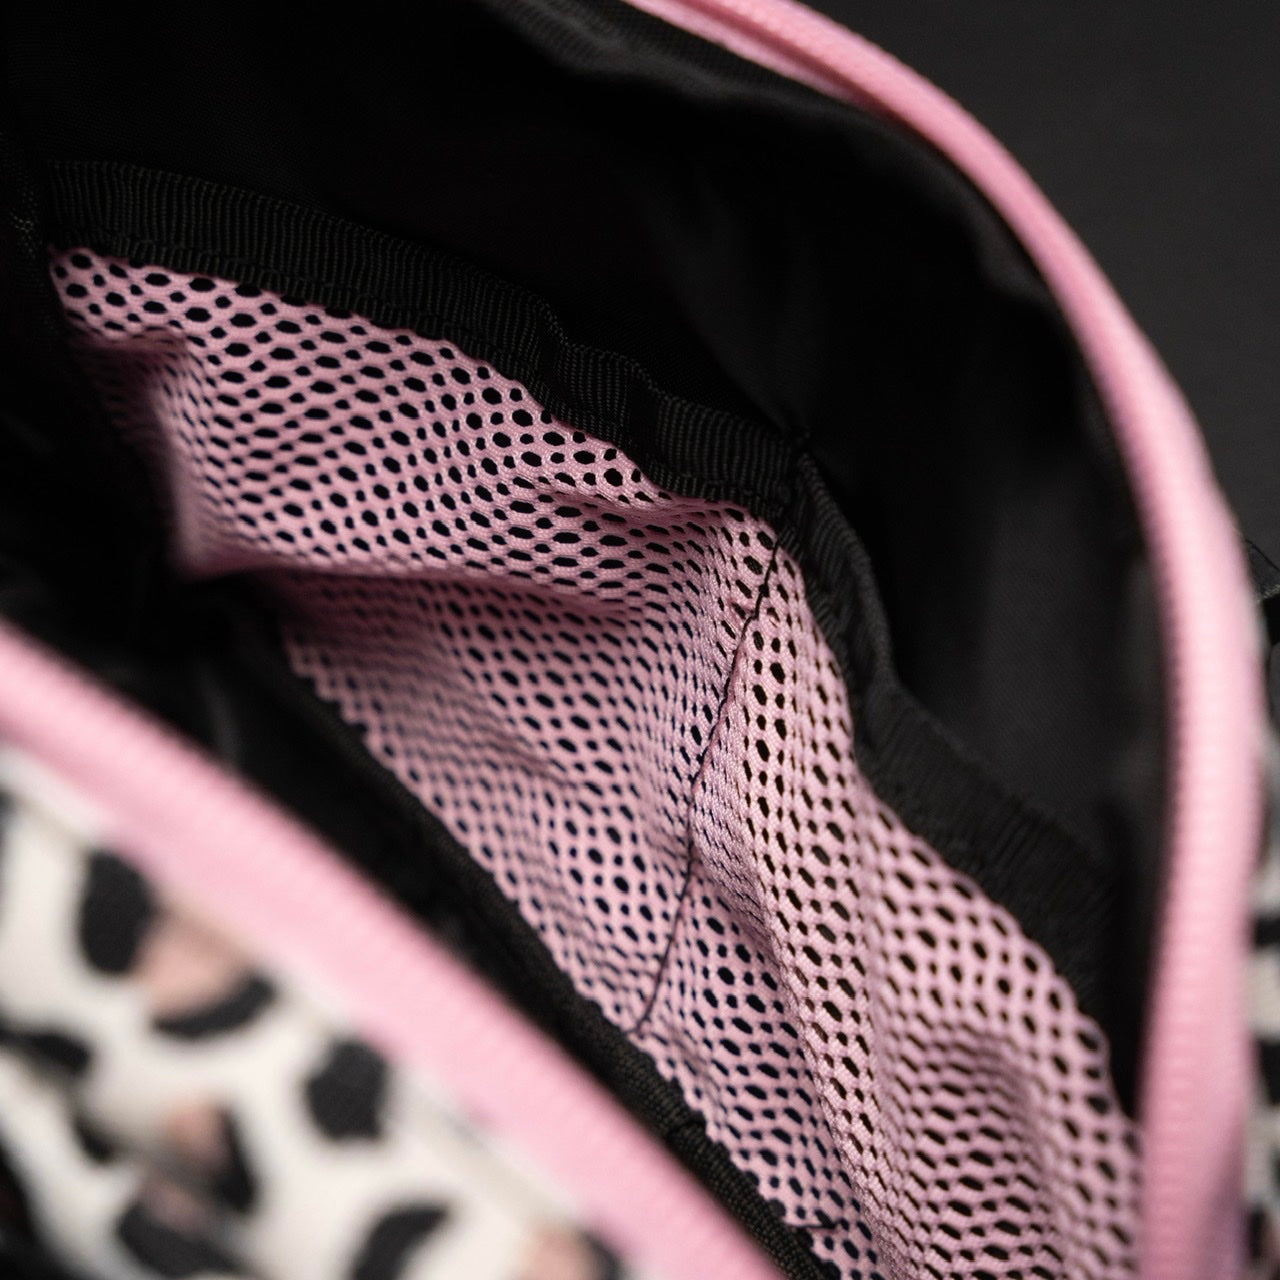 Crossbody Pack Leopard Pink Zip